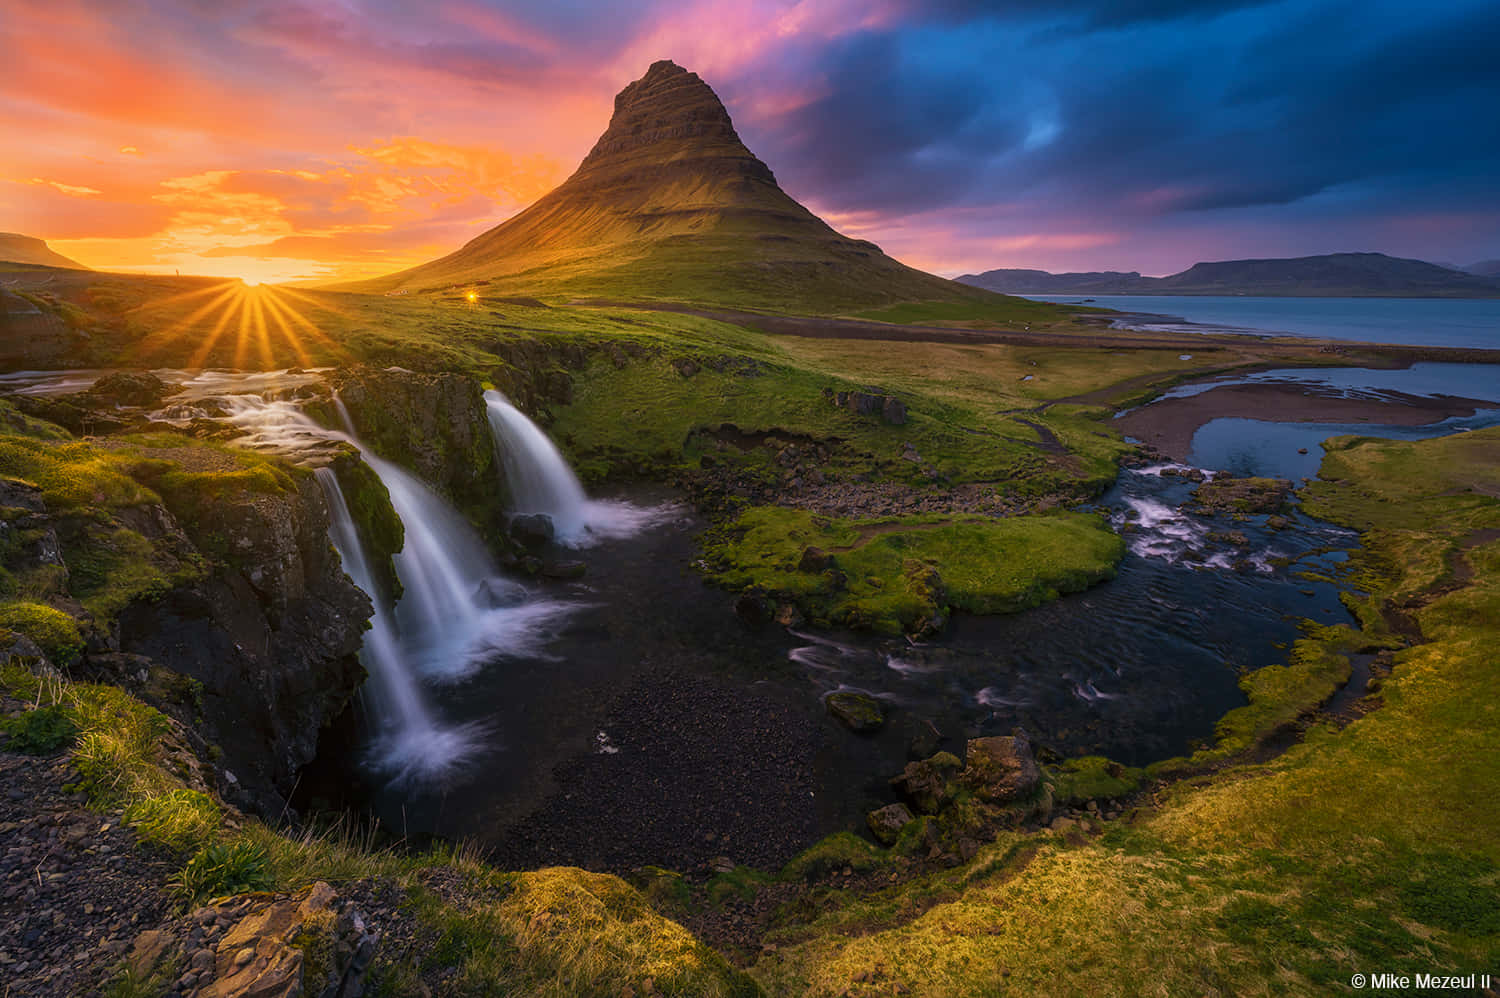 Envattenfall Och Ett Berg Vid Solnedgången På Island